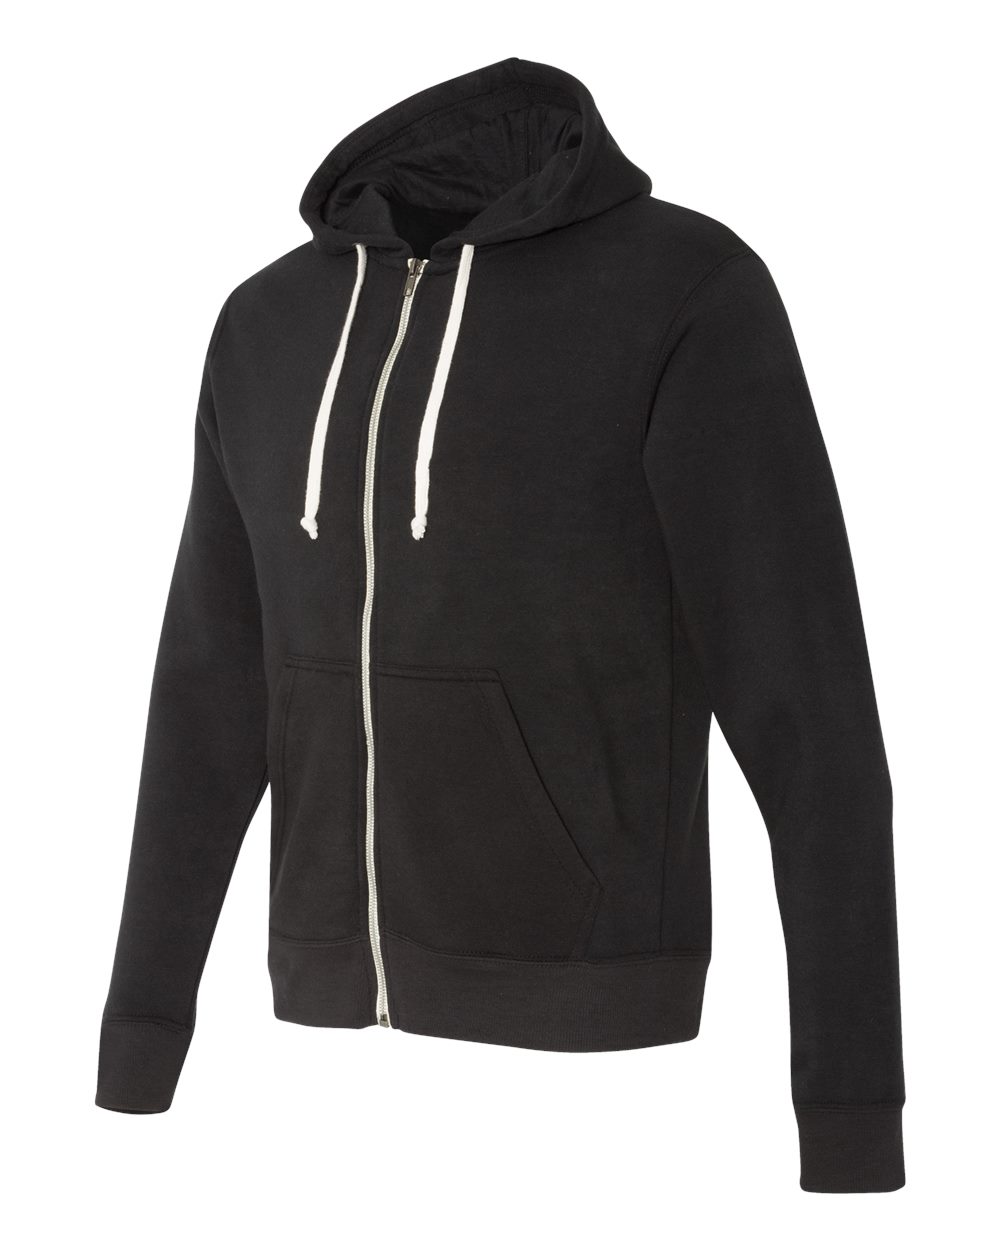 J. America 8872 - Triblend Hooded Full-Zip Sweatshirt